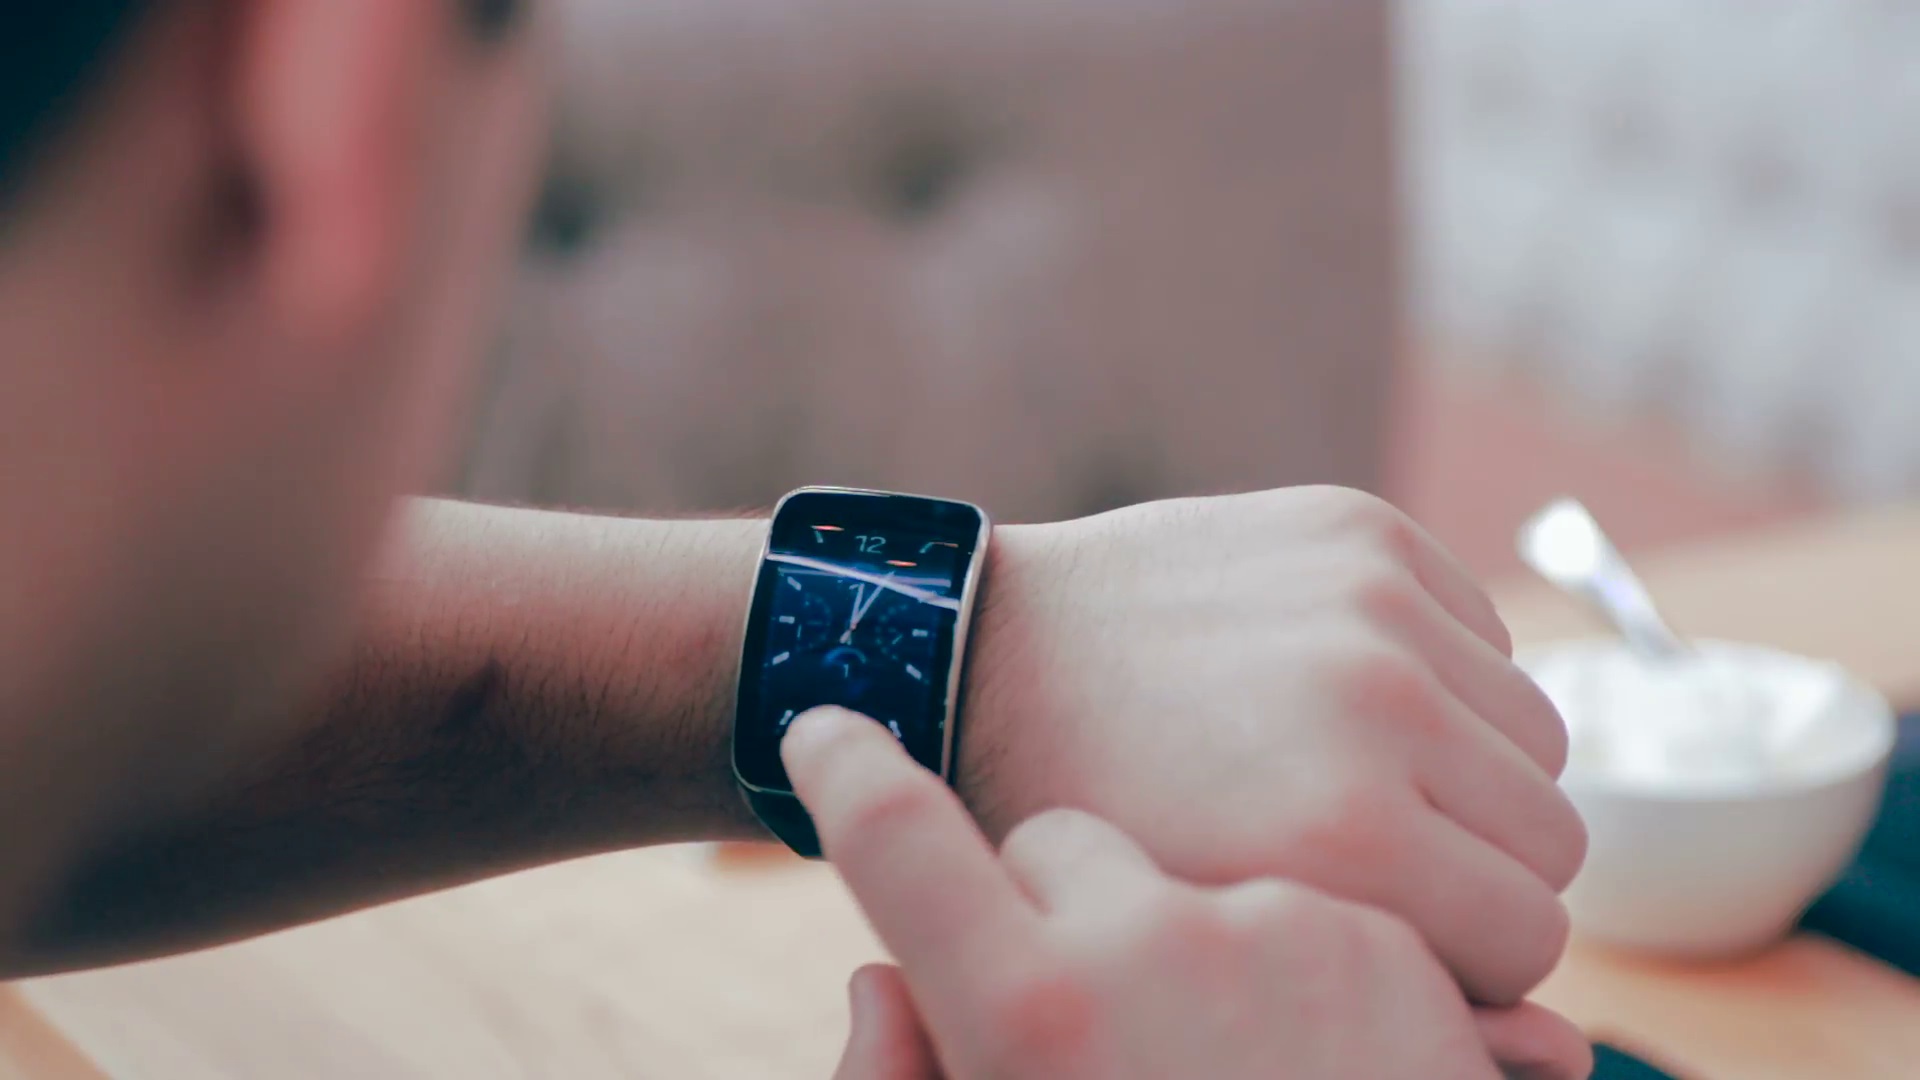 Simak 6 Tips Memilih Smartwatch yang Sesuai Kebutuhan